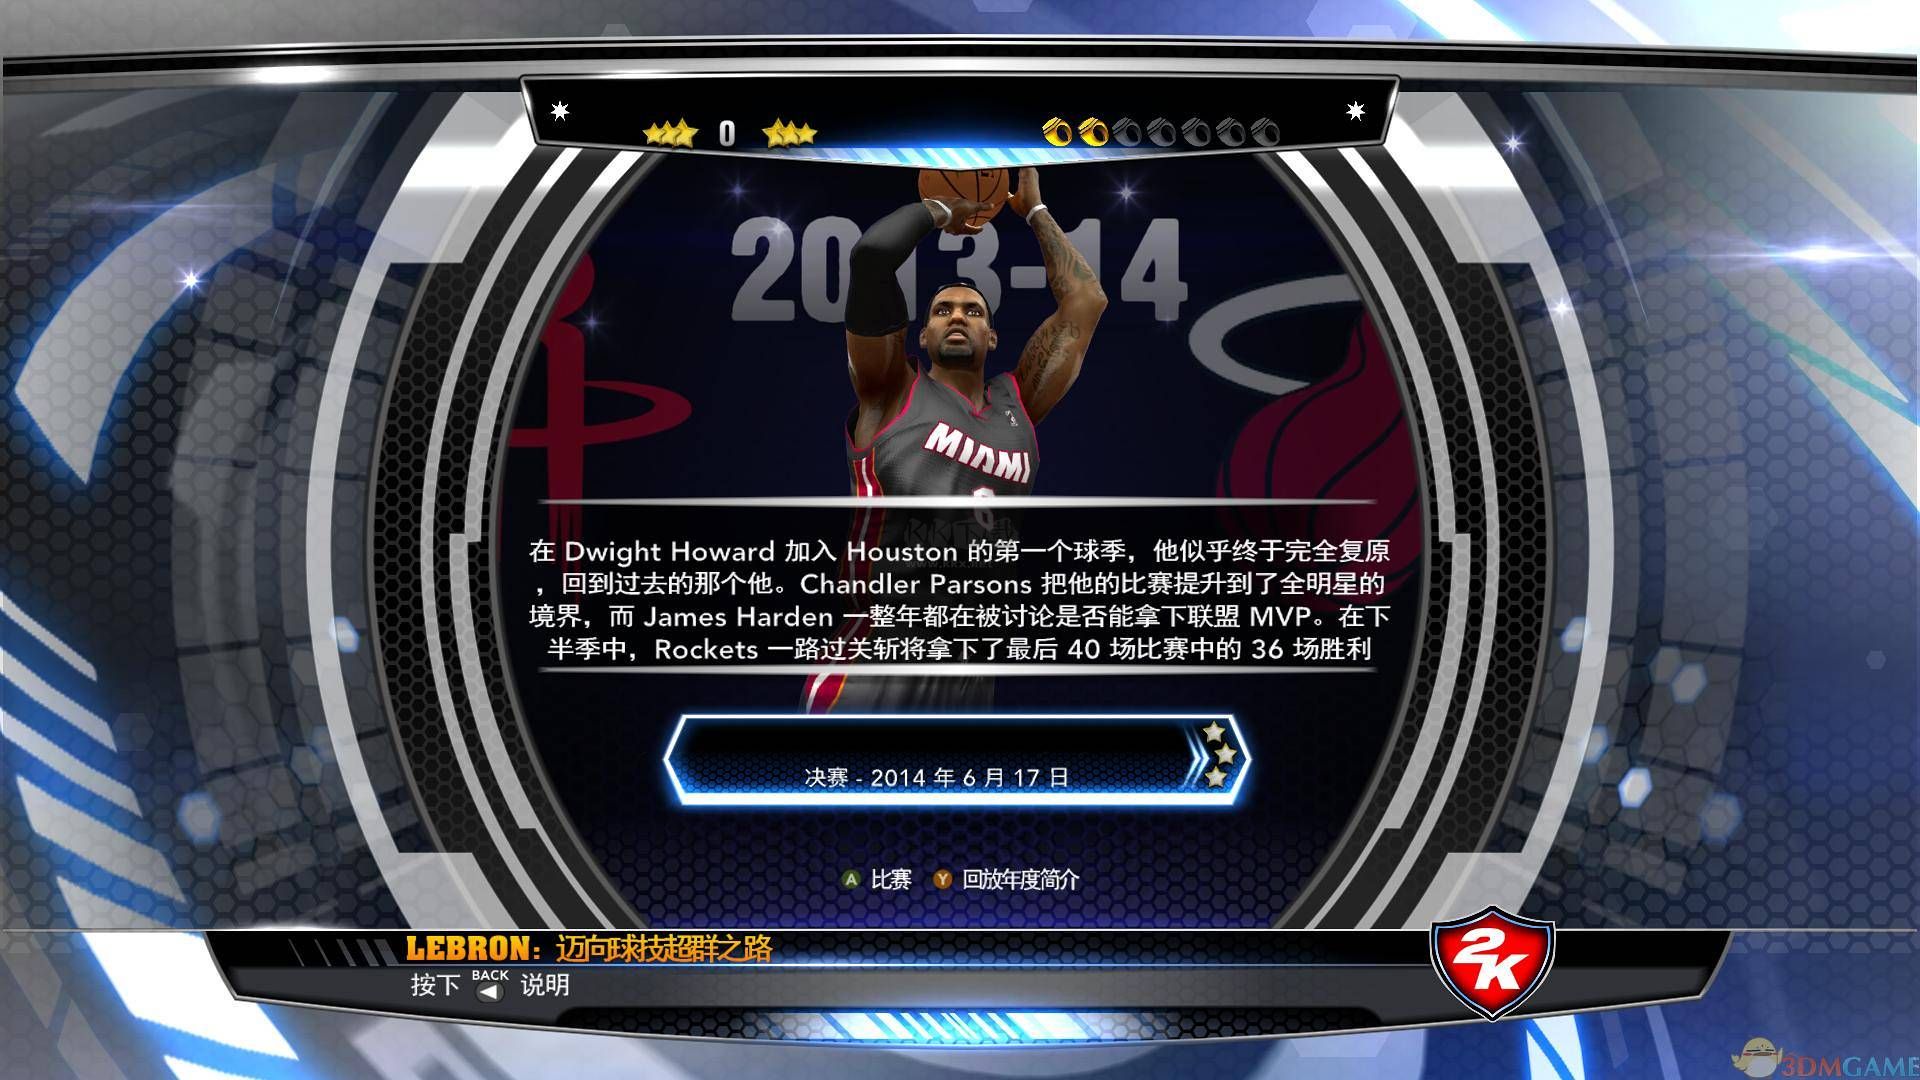 NBA2K14 PC客户端官方版最新